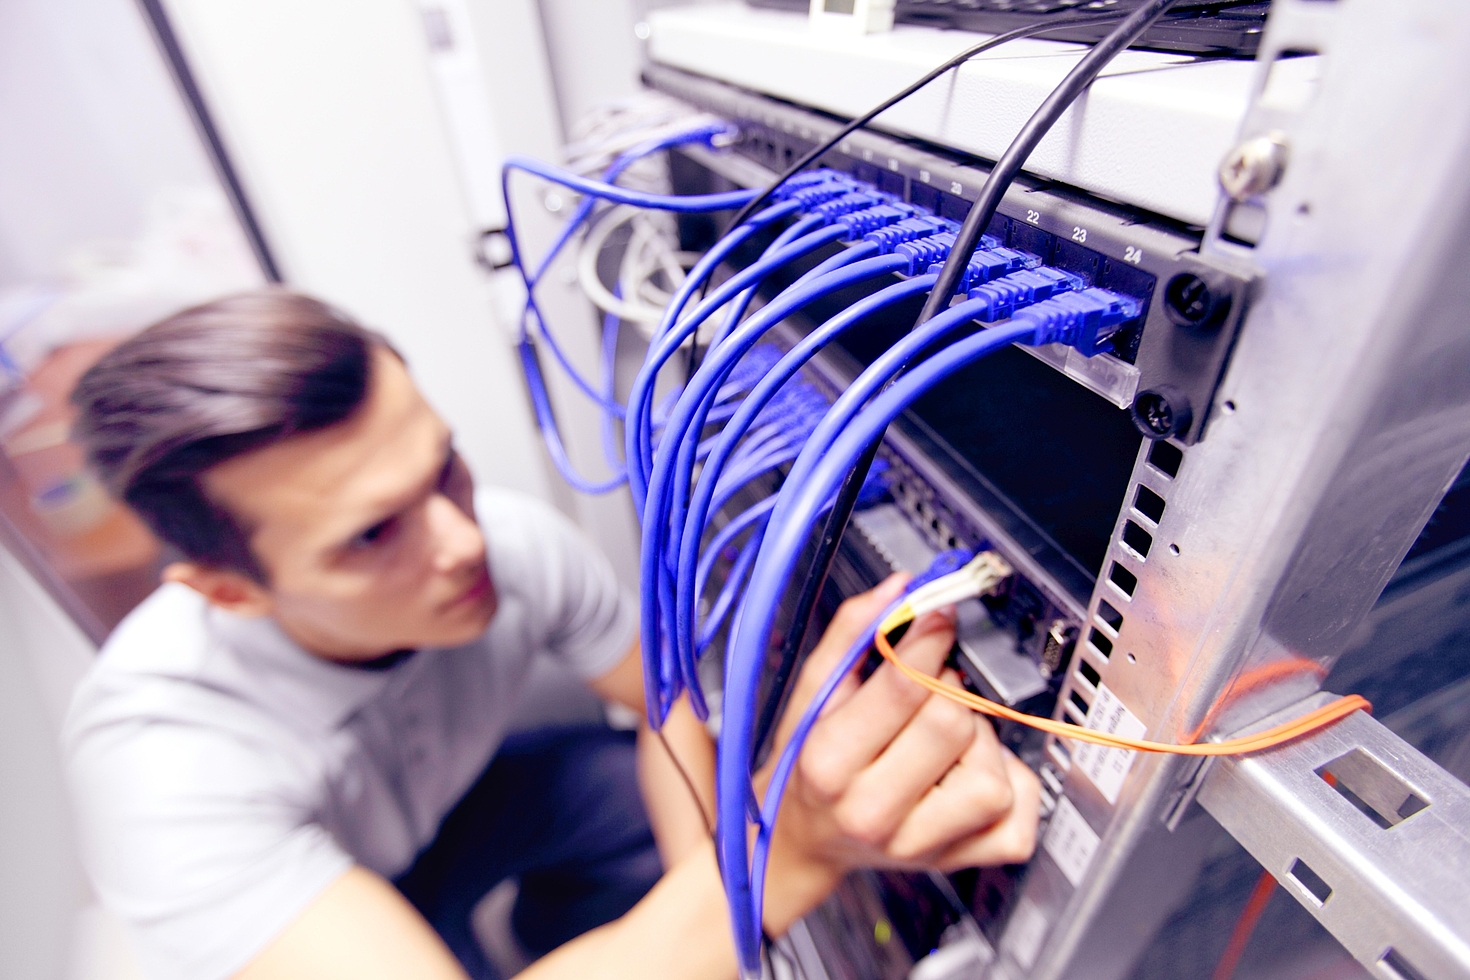 Foto: Ein Techniker vor einem Server-Schrank